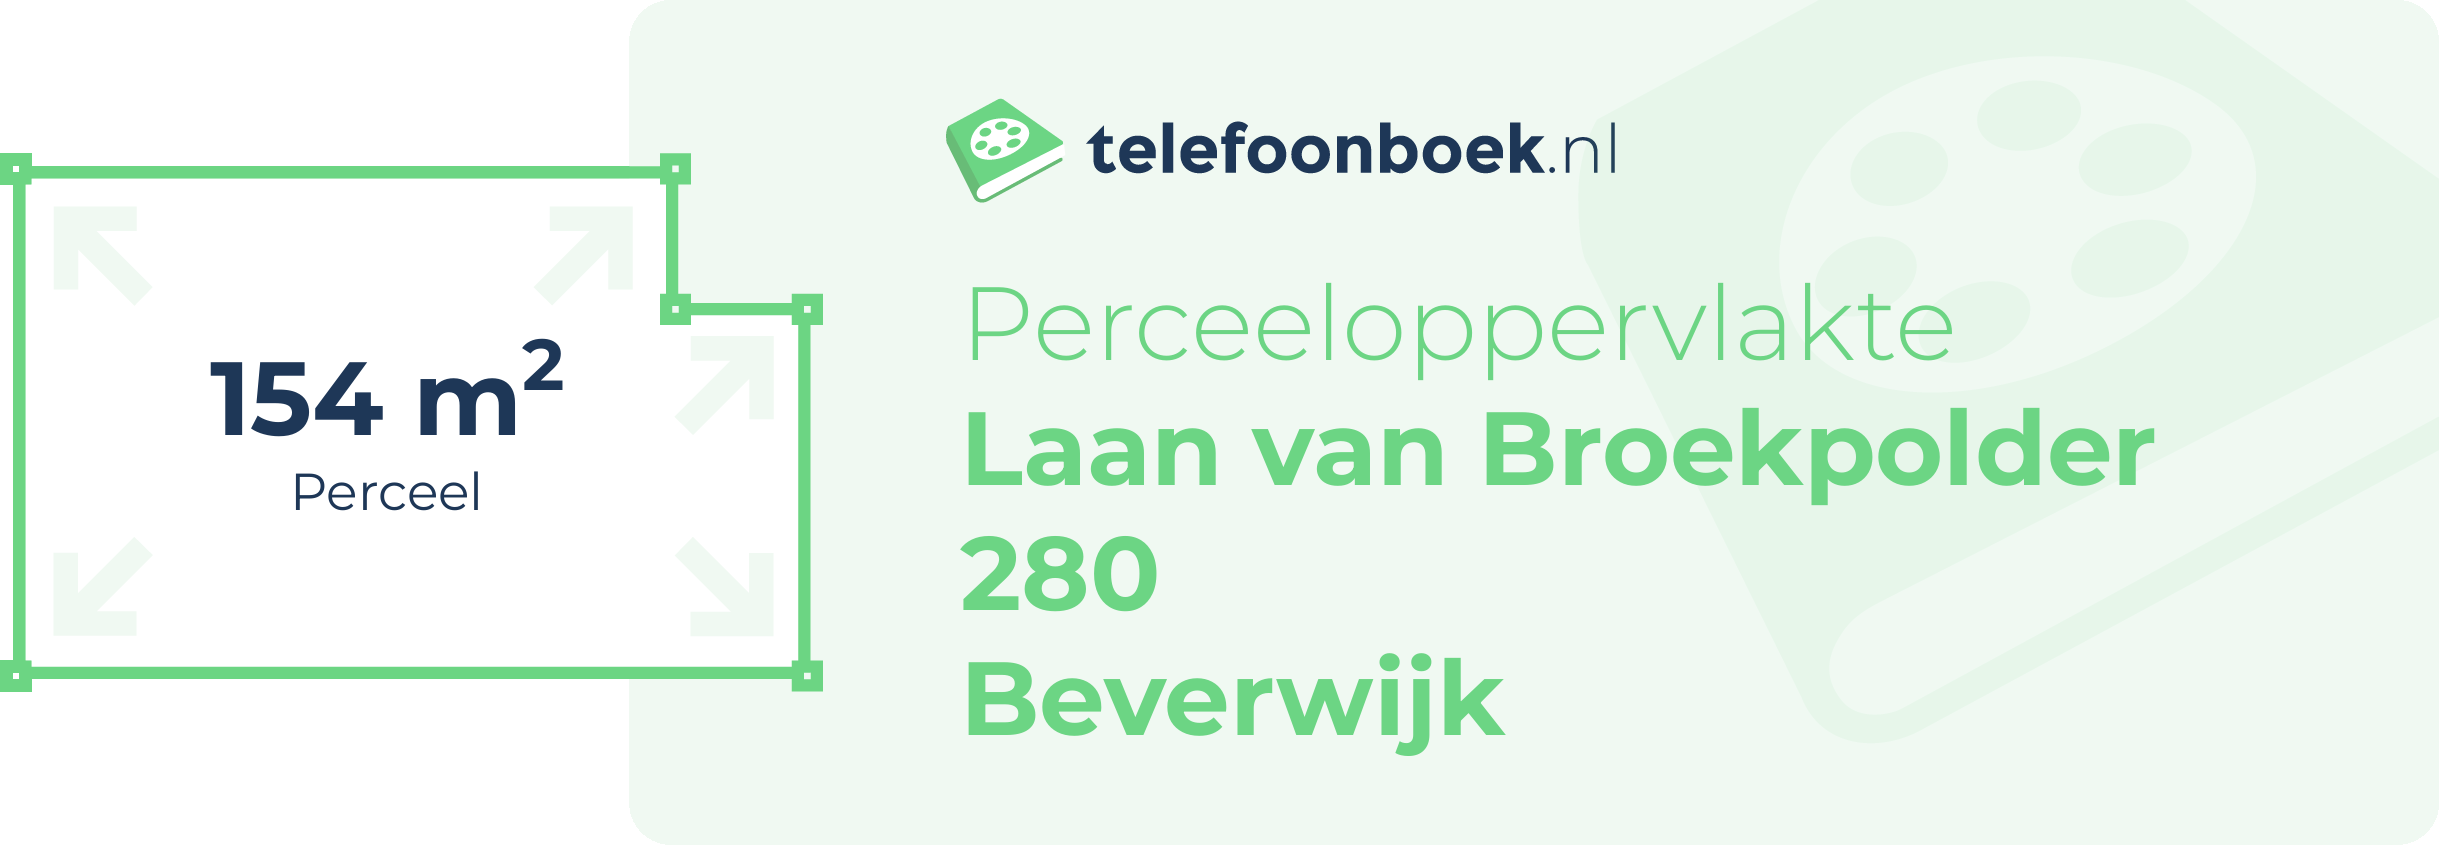 Perceeloppervlakte Laan Van Broekpolder 280 Beverwijk